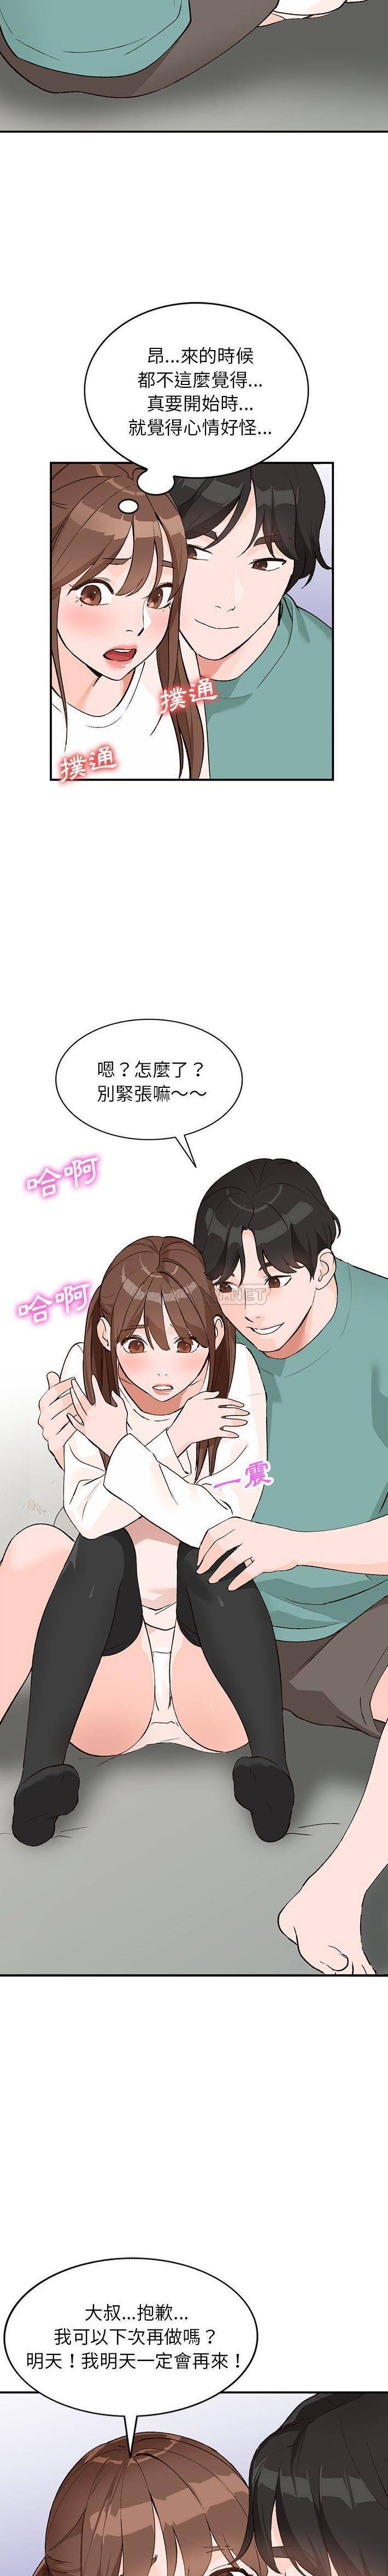 韩国污漫画 她們的小秘密(小鎮上的女人們) 第15话 19